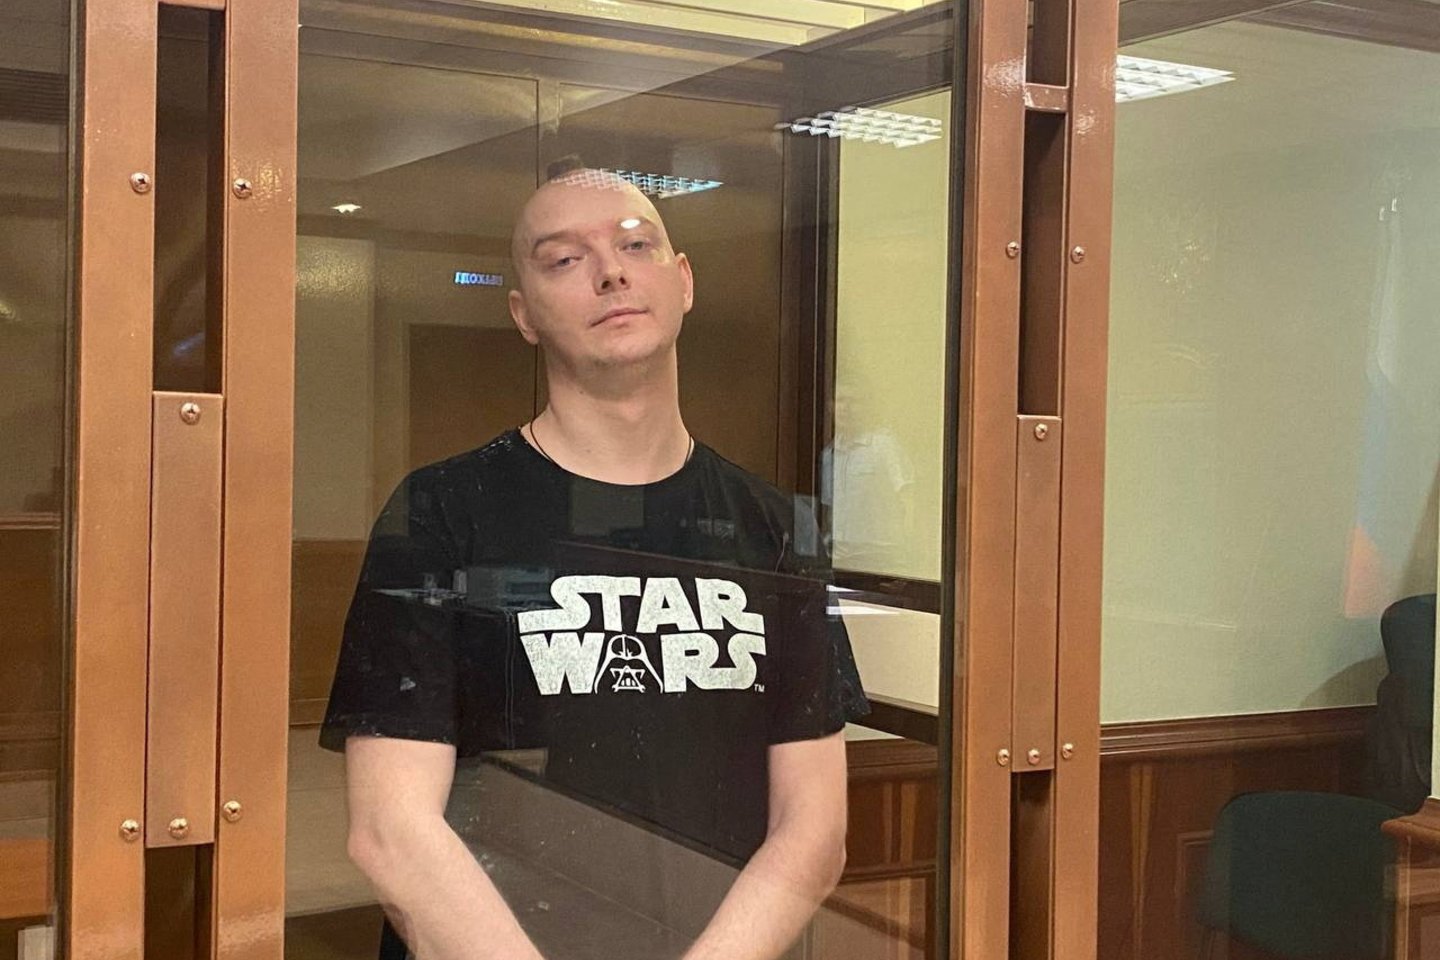 Maskvos teismas skyrė 22 metų įkalinimo bausmę gynybos klausimais rašydavusiam buvusiam reporteriui Ivanui Safronovui, nuteistam dėl kaltinimų valstybės išdavimu.<br>Reuters/Scanpix nuotr.